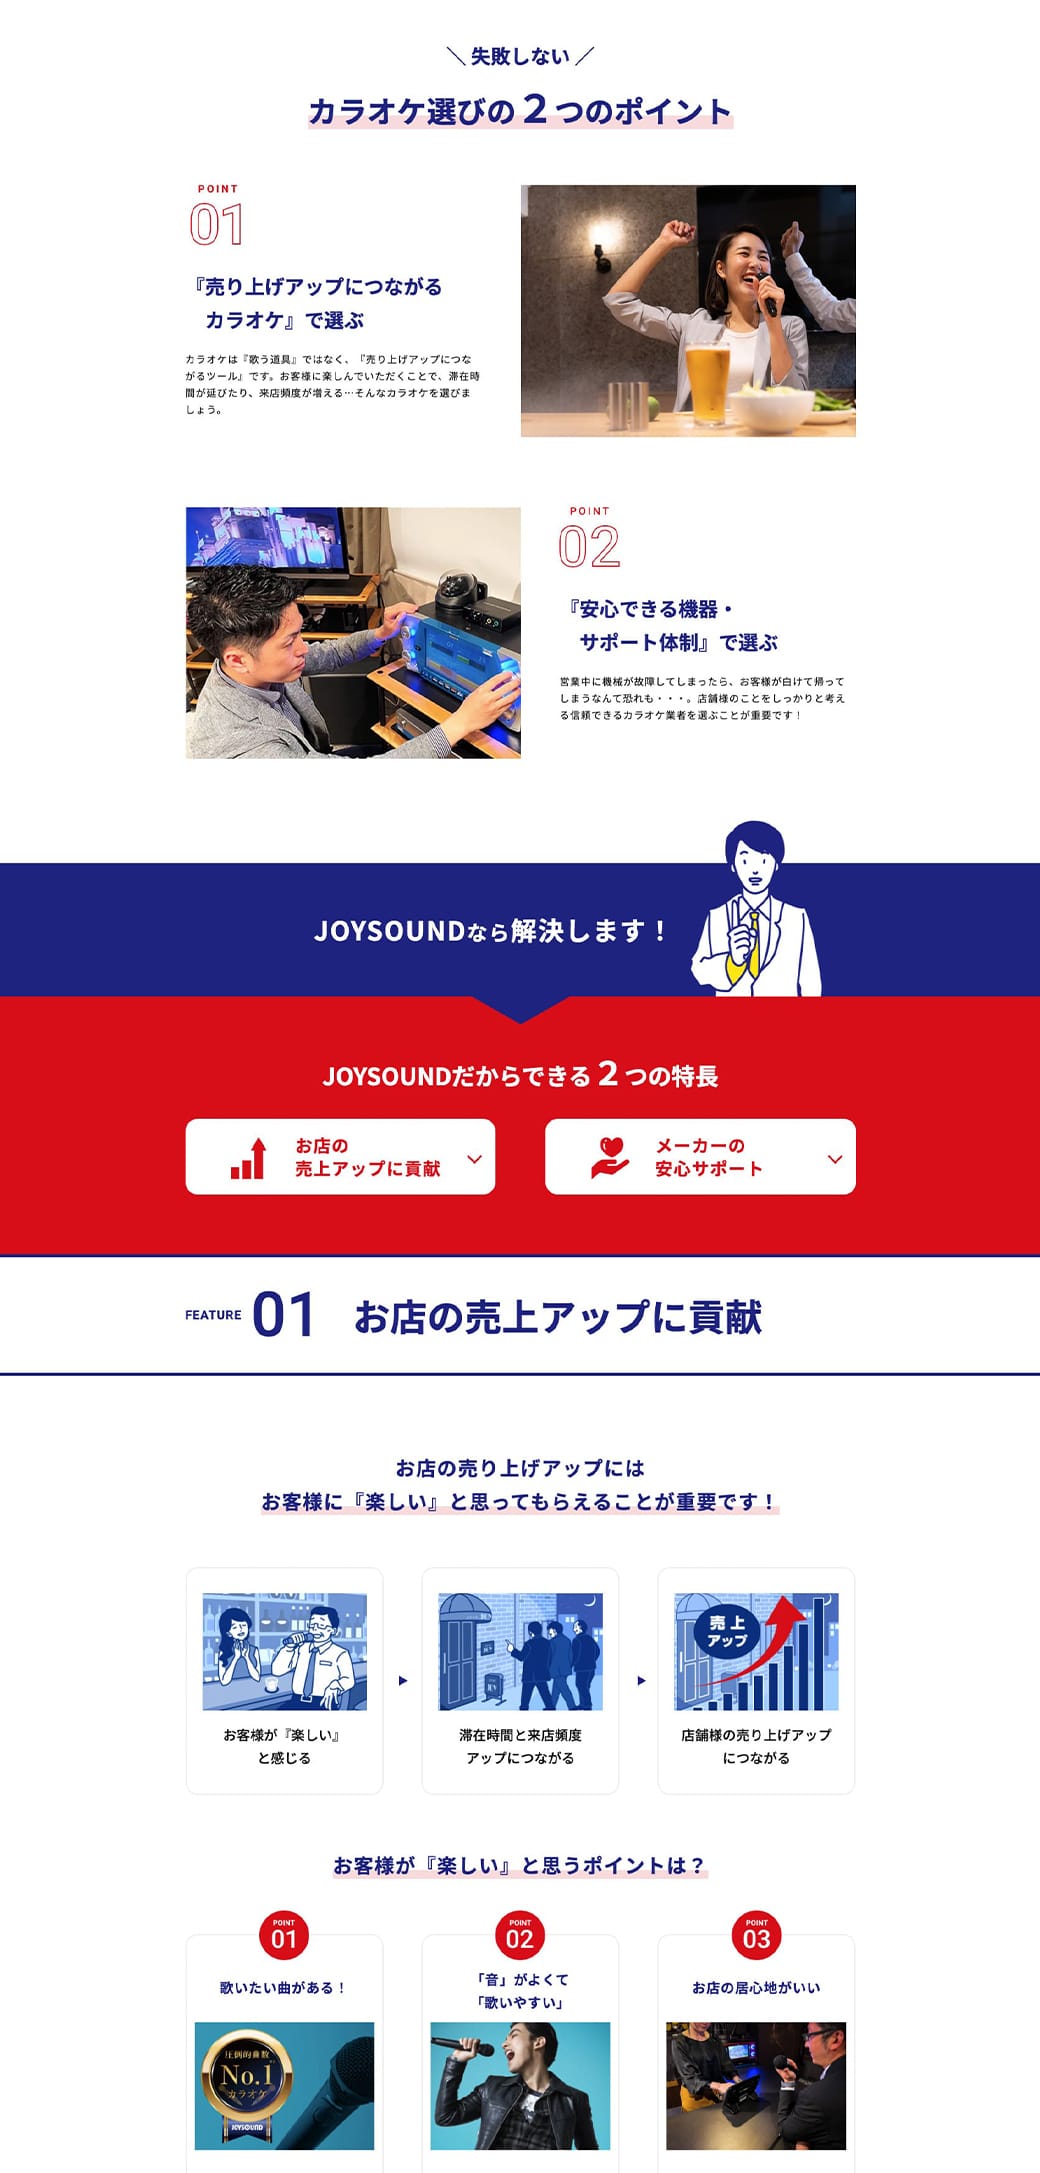 「JOYSOUND カラオケ導入相談受付」WEBサイト